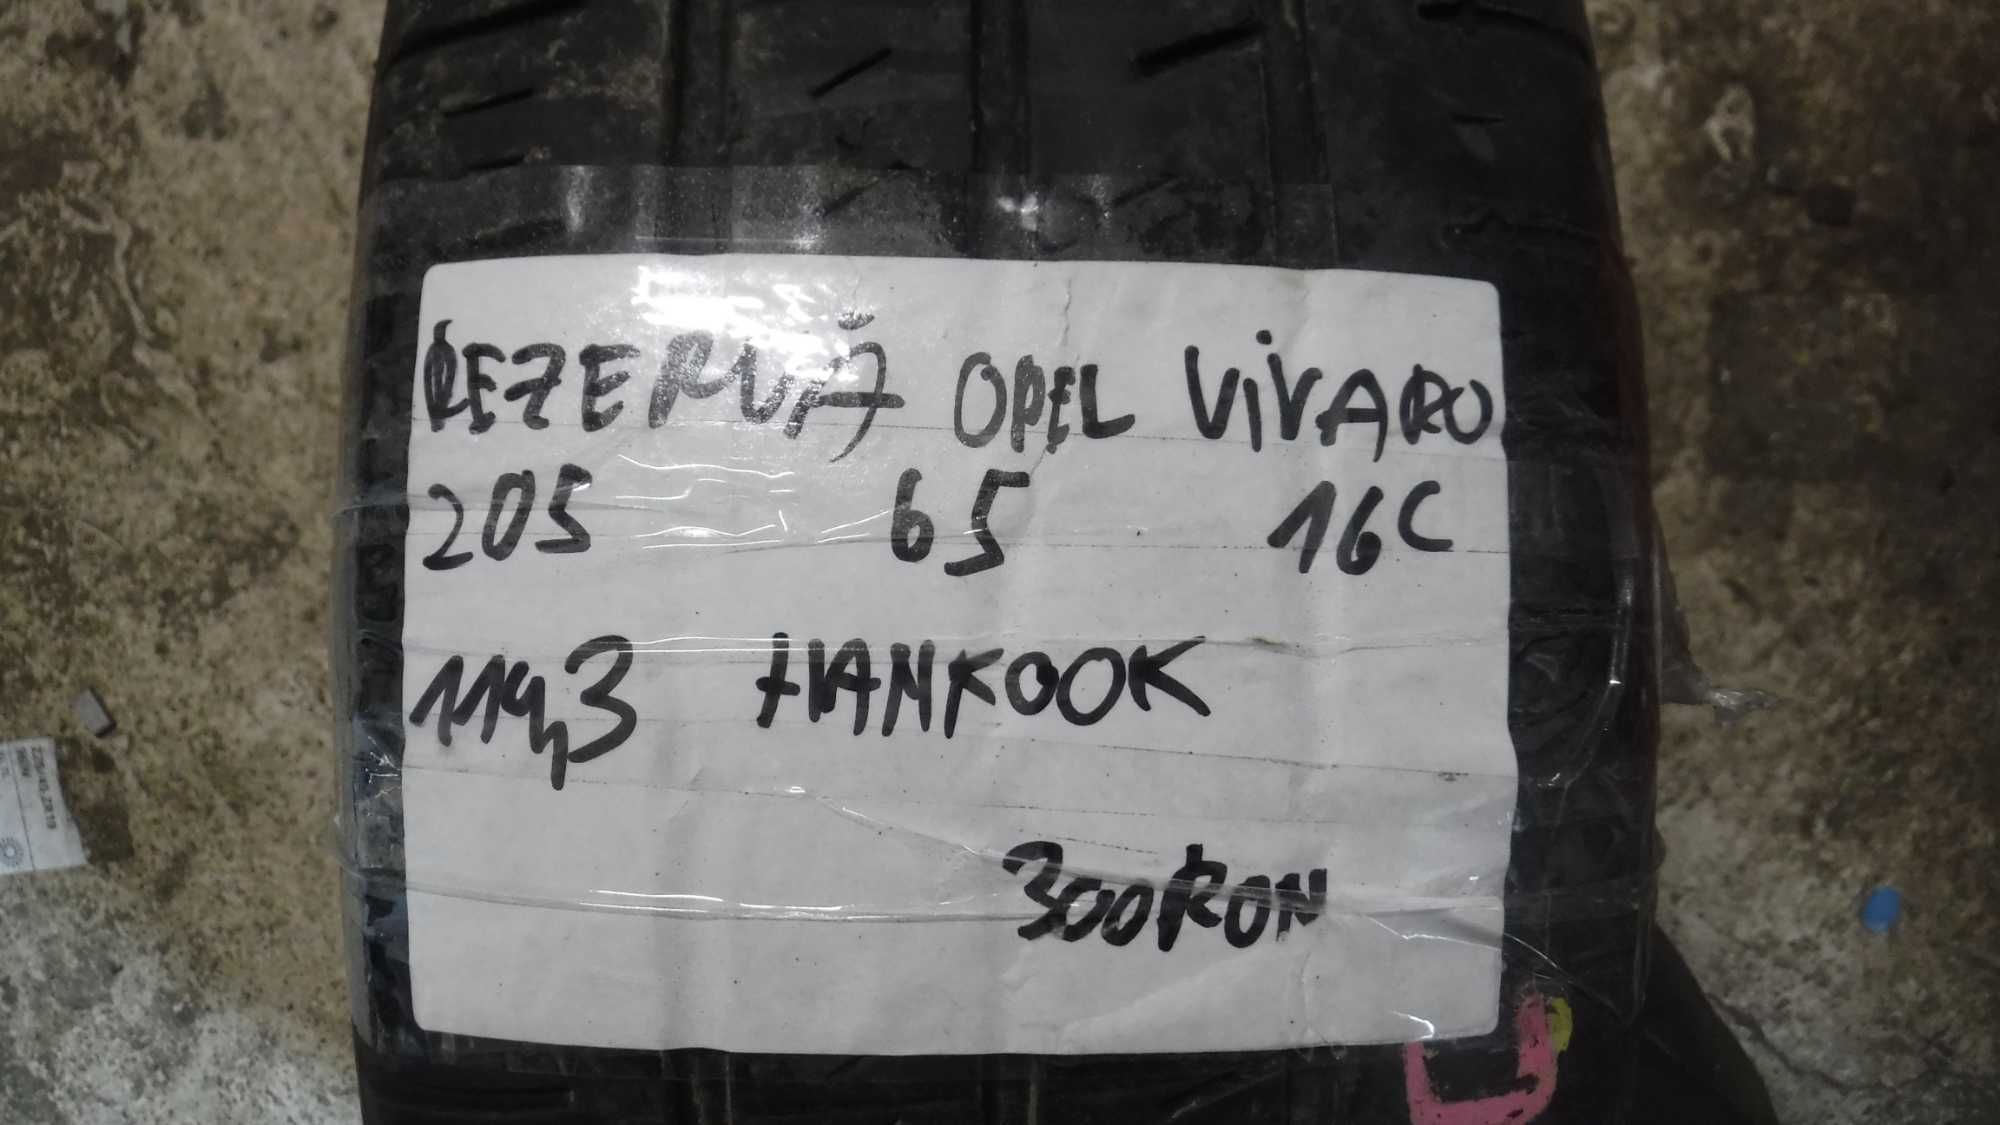 Rezerva Opel Vivaro 205 65 16C  114,3 Hankook